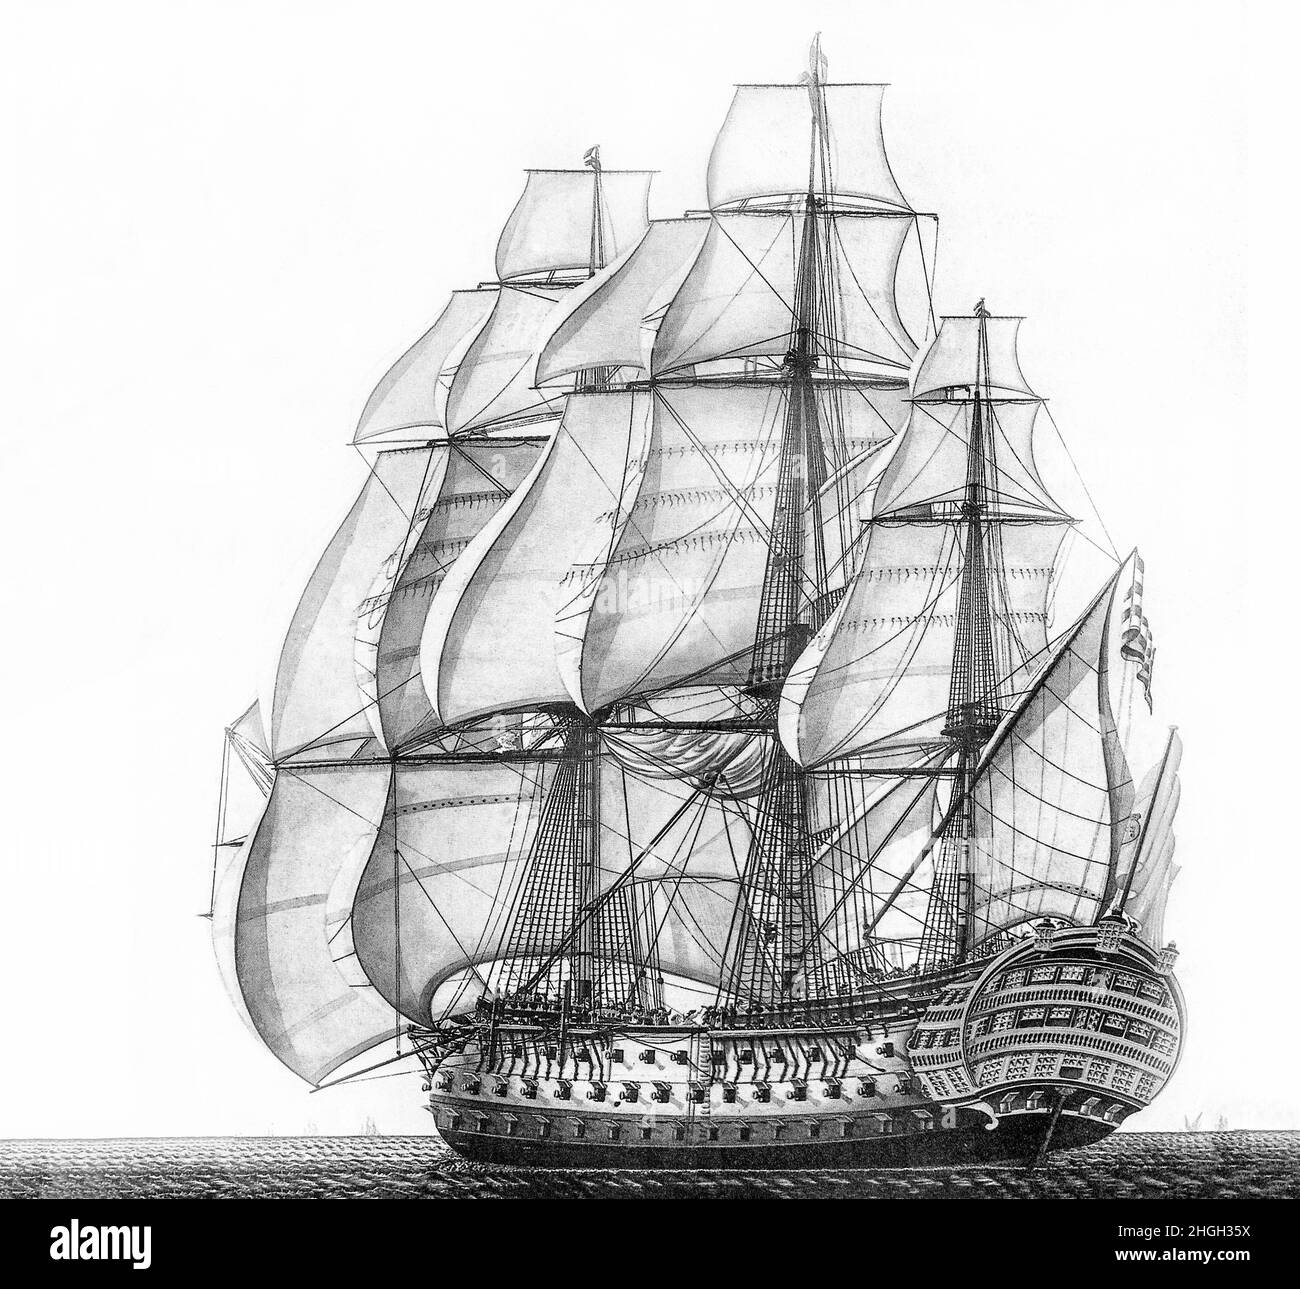 Eine monochrome Illustration des spanischen Schiffes 'Santísima Trinidad', eines spanischen, erstklassigen Linienschiffs mit 112 Geschützen. Dies wurde auf 140 Kanonen um 1802 erhöht, wodurch in der Tat ein kontinuierliches viertes Schießdeck geschaffen wurde, obwohl die zusätzlichen Kanonen, die hinzugefügt wurden, tatsächlich relativ klein waren. Sie war das schwerbewaffnete Schiff der Welt, als sie wieder aufgebaut wurde, und trug die meisten Geschütze aller Schiffe der Linie, die im Zeitalter von Sail ausgestattet waren. Sie nahm am 21. Oktober 1805 an der Schlacht von Trafalgar Teil, als Teil der kombinierten französisch-spanischen Flotte. Stockfoto